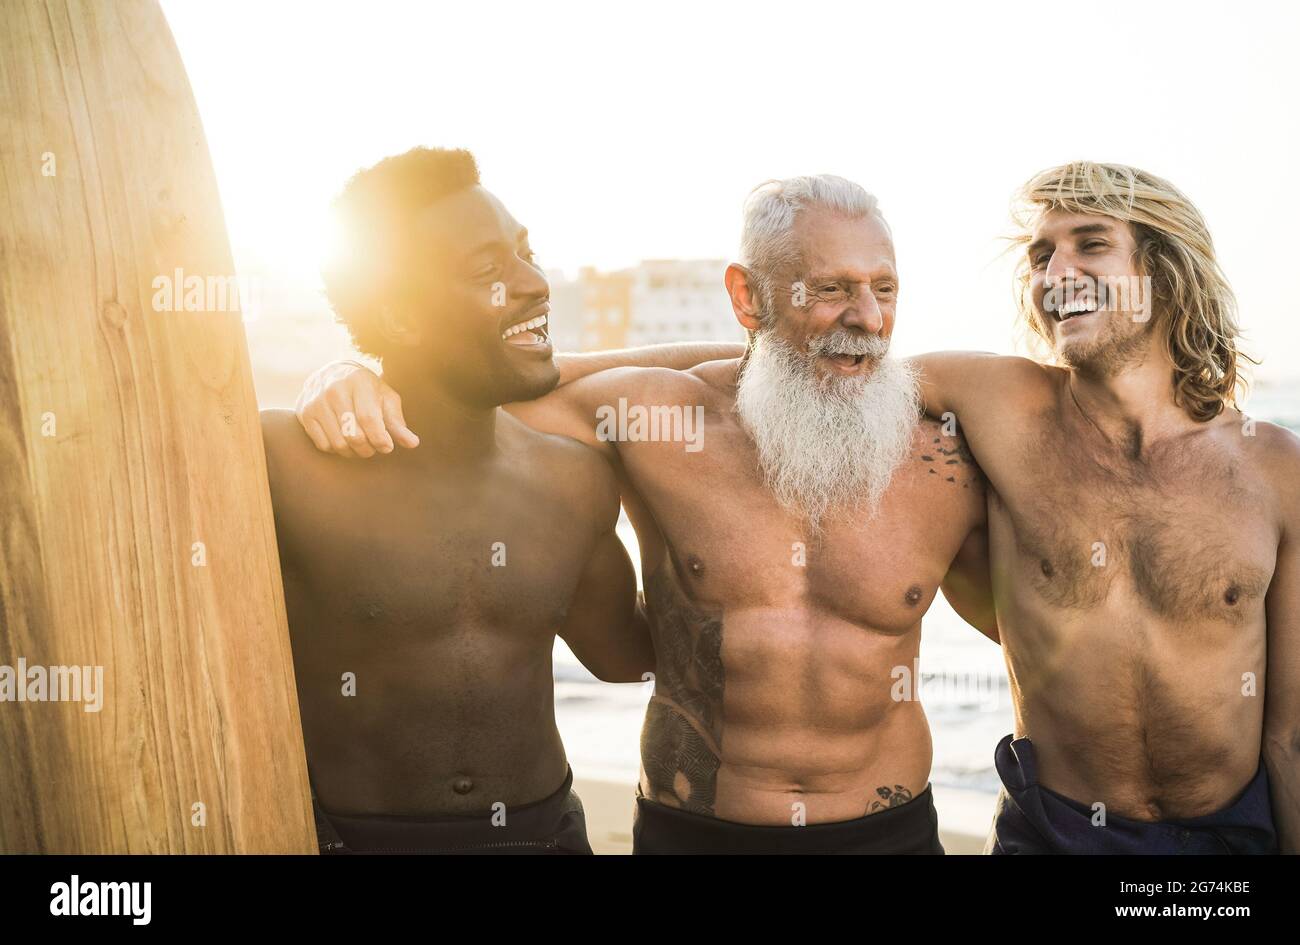 Surfer-Freunde mit mehreren Generationen, die nach der Surfstunde am Strand Spaß haben – konzentrieren Sie sich auf das Gesicht eines älteren Mannes Stockfoto